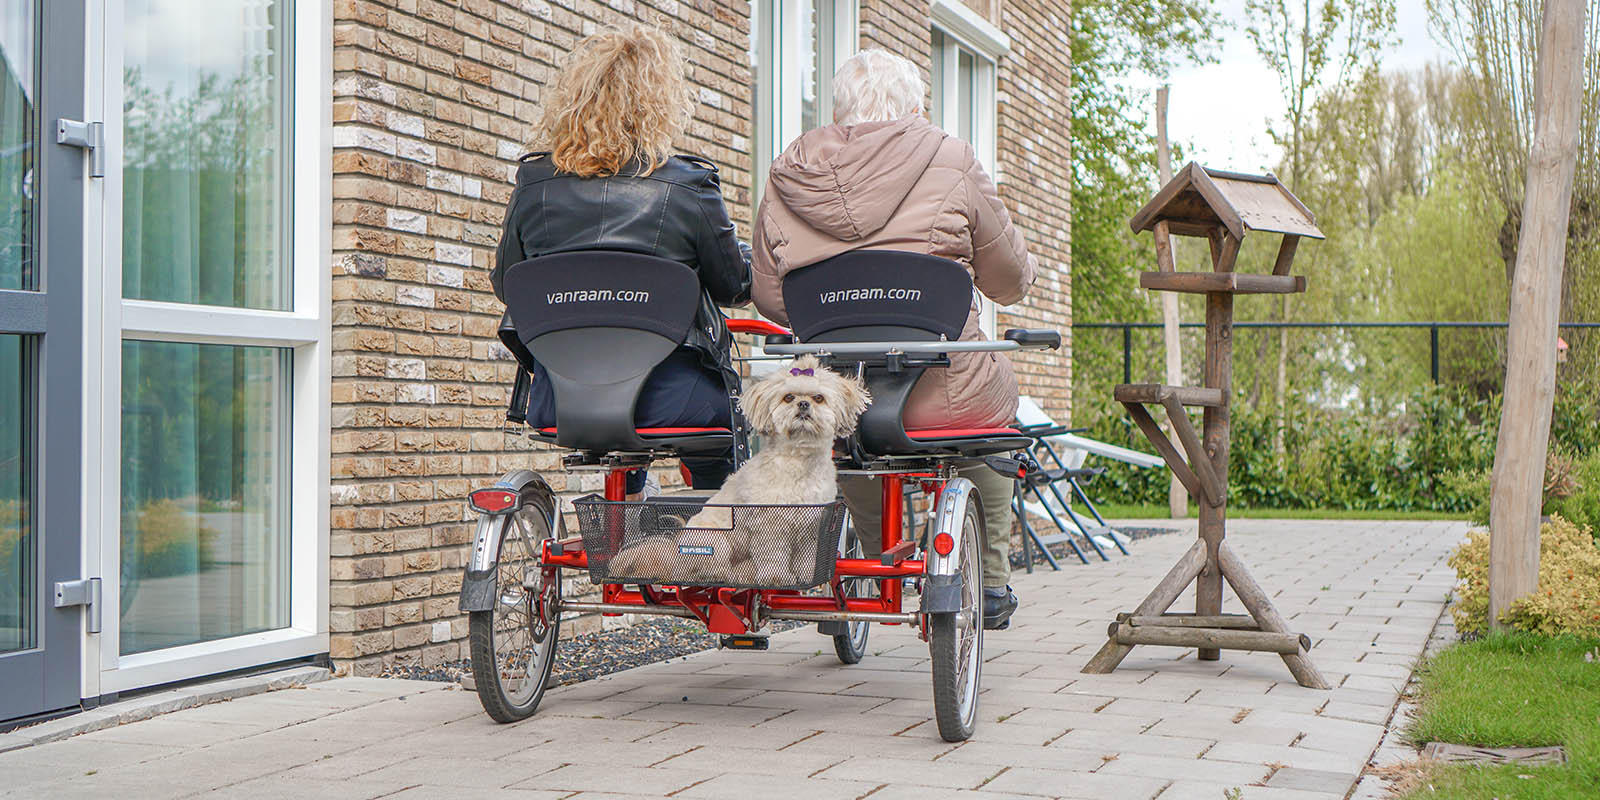 Aan Het Enkhuis, kleinschalig wonen voor mensen met dementie, is een duofiets geschonken. Foto ter illustratie: we zien van achteren een moder met dementie samen met haar dochter wegfietsen op de duofiets. In het bakje achterop de fiets het hondje van de dochter, die de camera in kijkt.